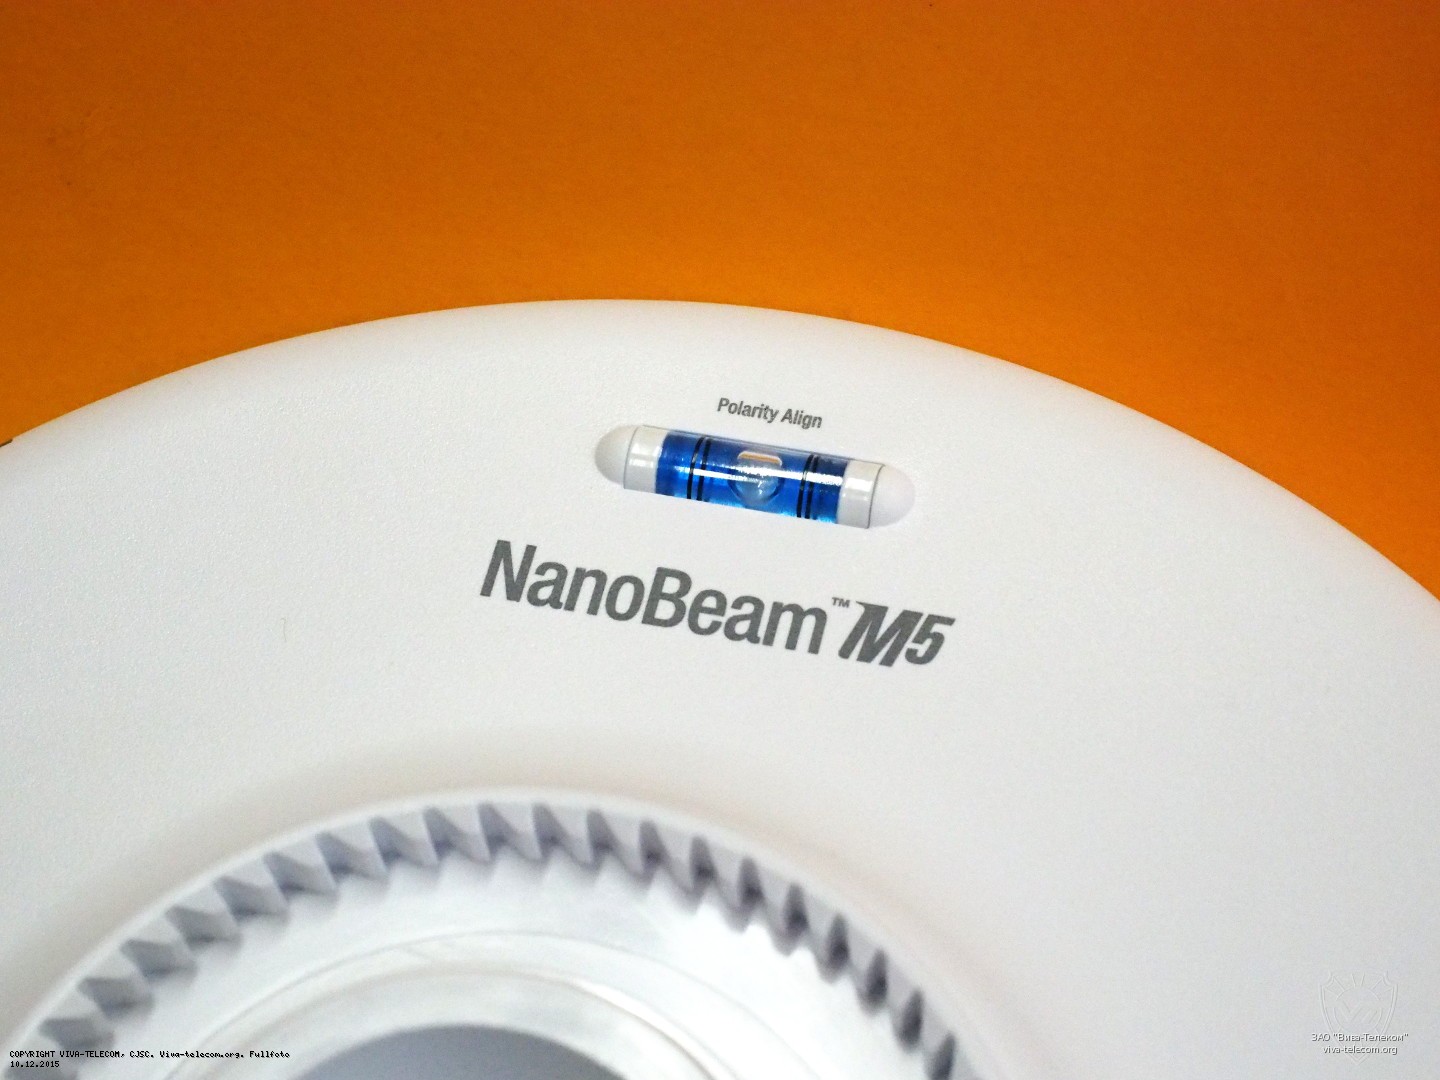   ,     Ubiquiti NanoBeam M5